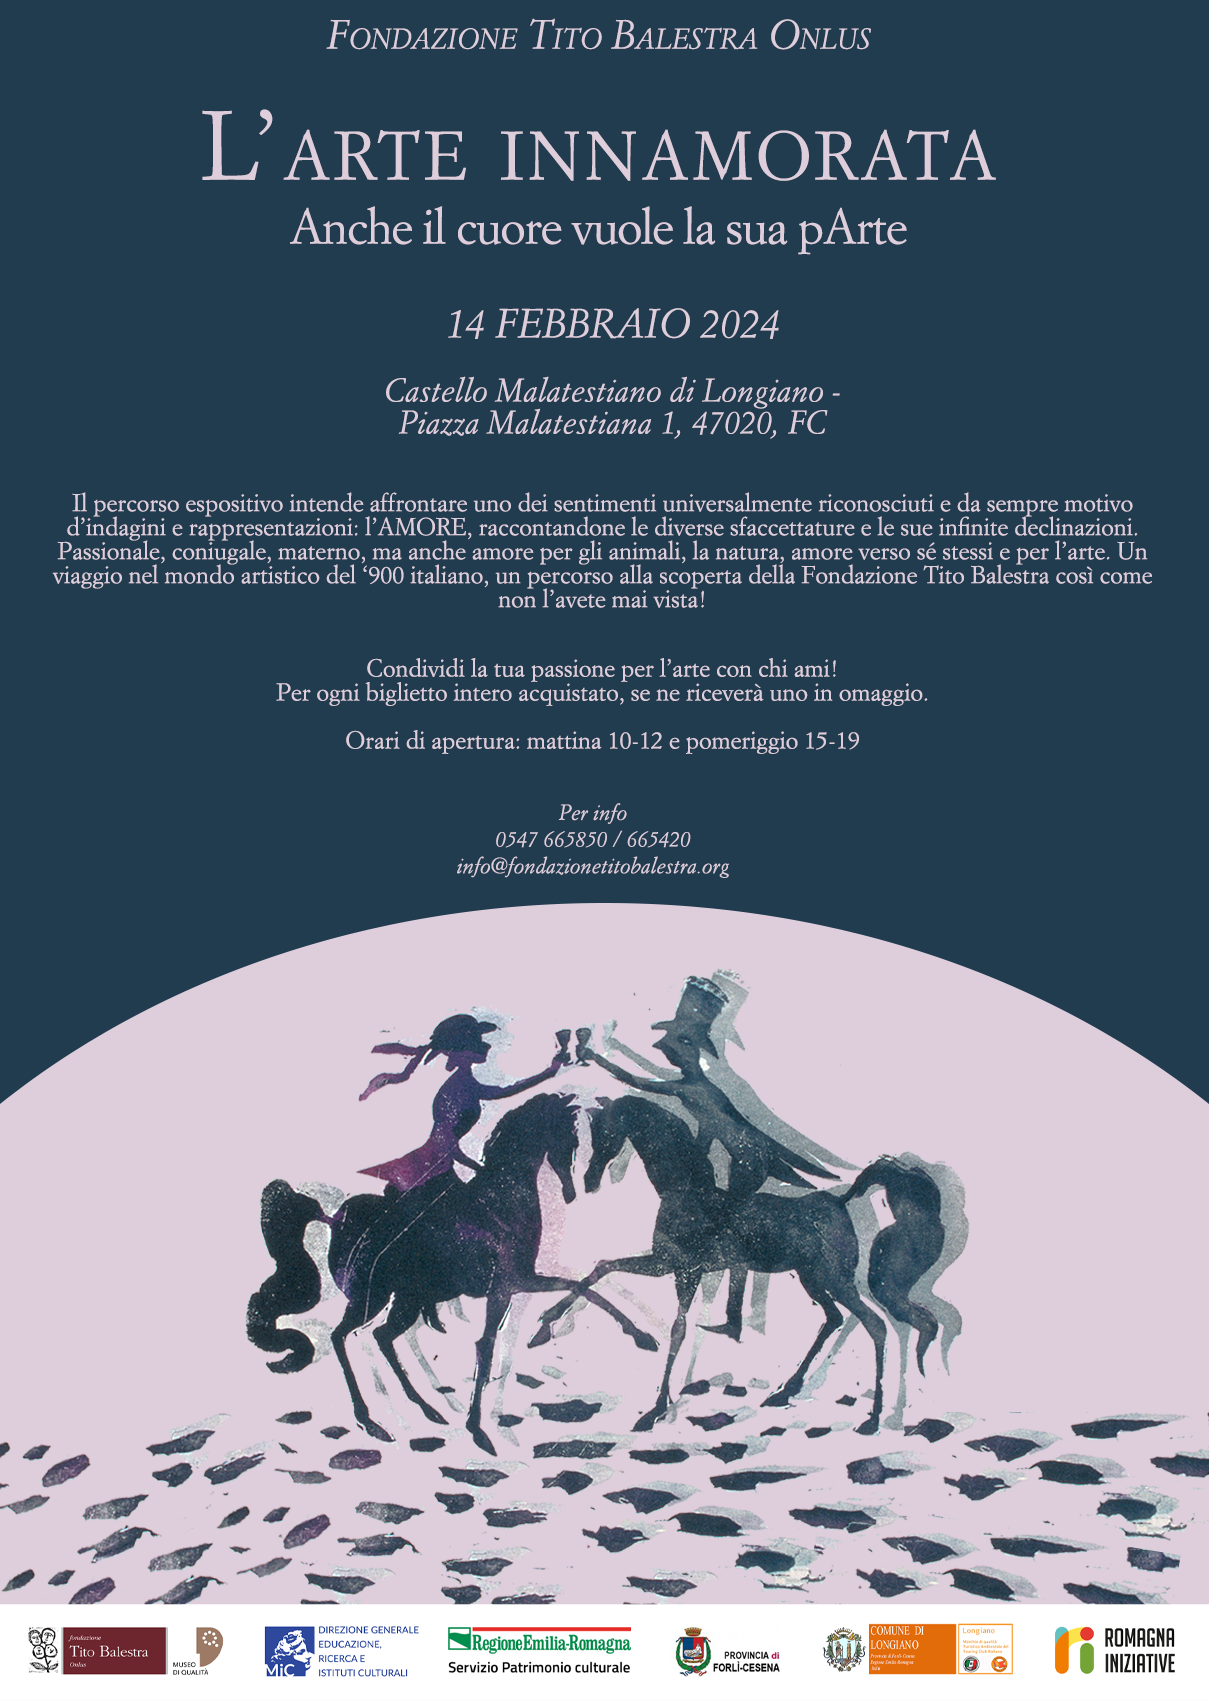  immagine dell'evento: Anche il Cuore vuole la sua pArte - San Valentino alla Fondazione Tito Balestra Onlus